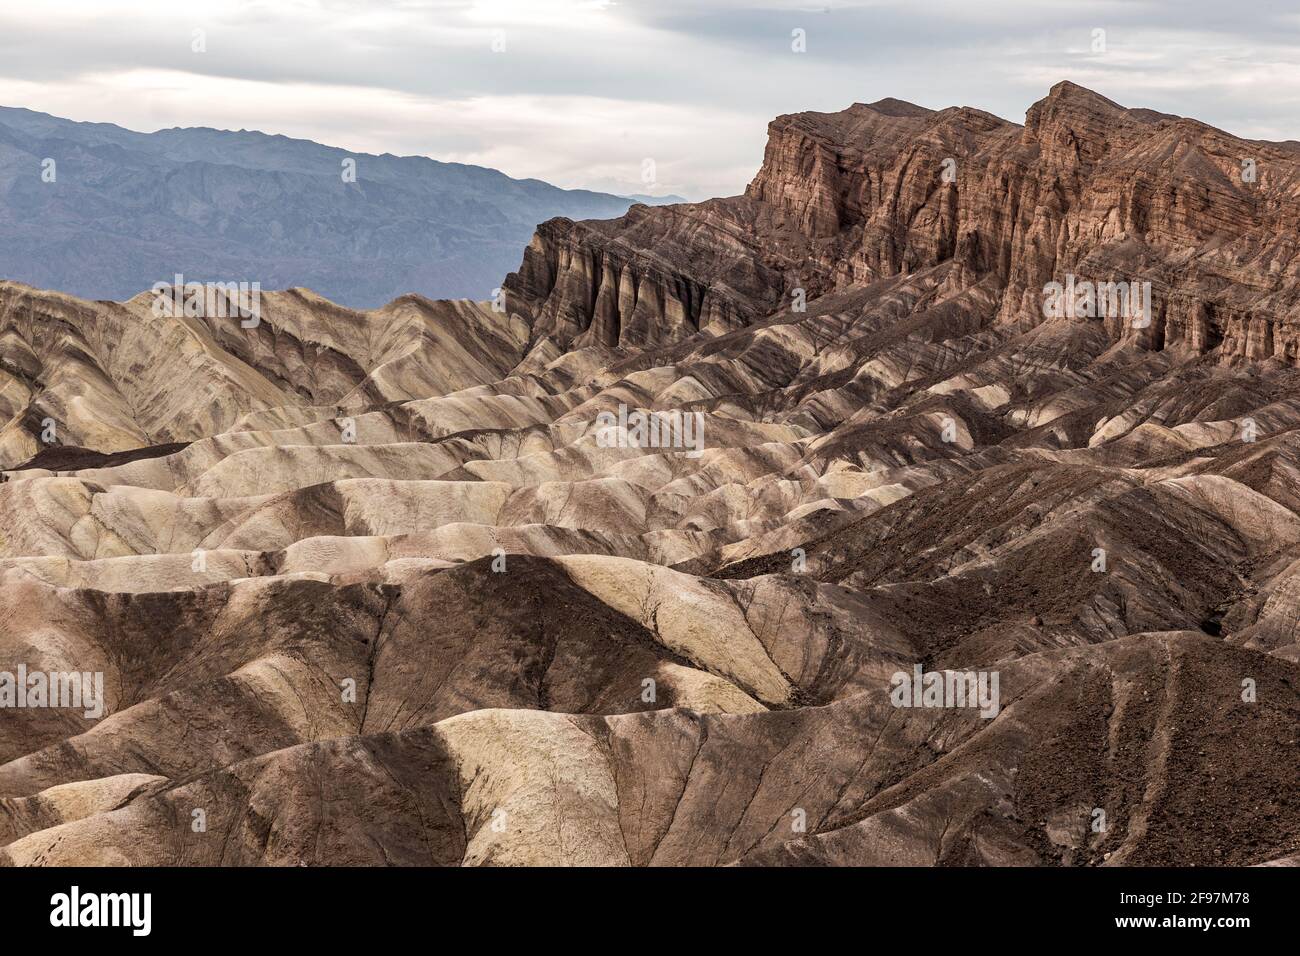 Una pintoresca escena del desierto con crestas erosionadas adoptadas en el conocido Zabriskie Point, el Parque Nacional Valle de la Muerte, California, EE.UU. Foto de stock